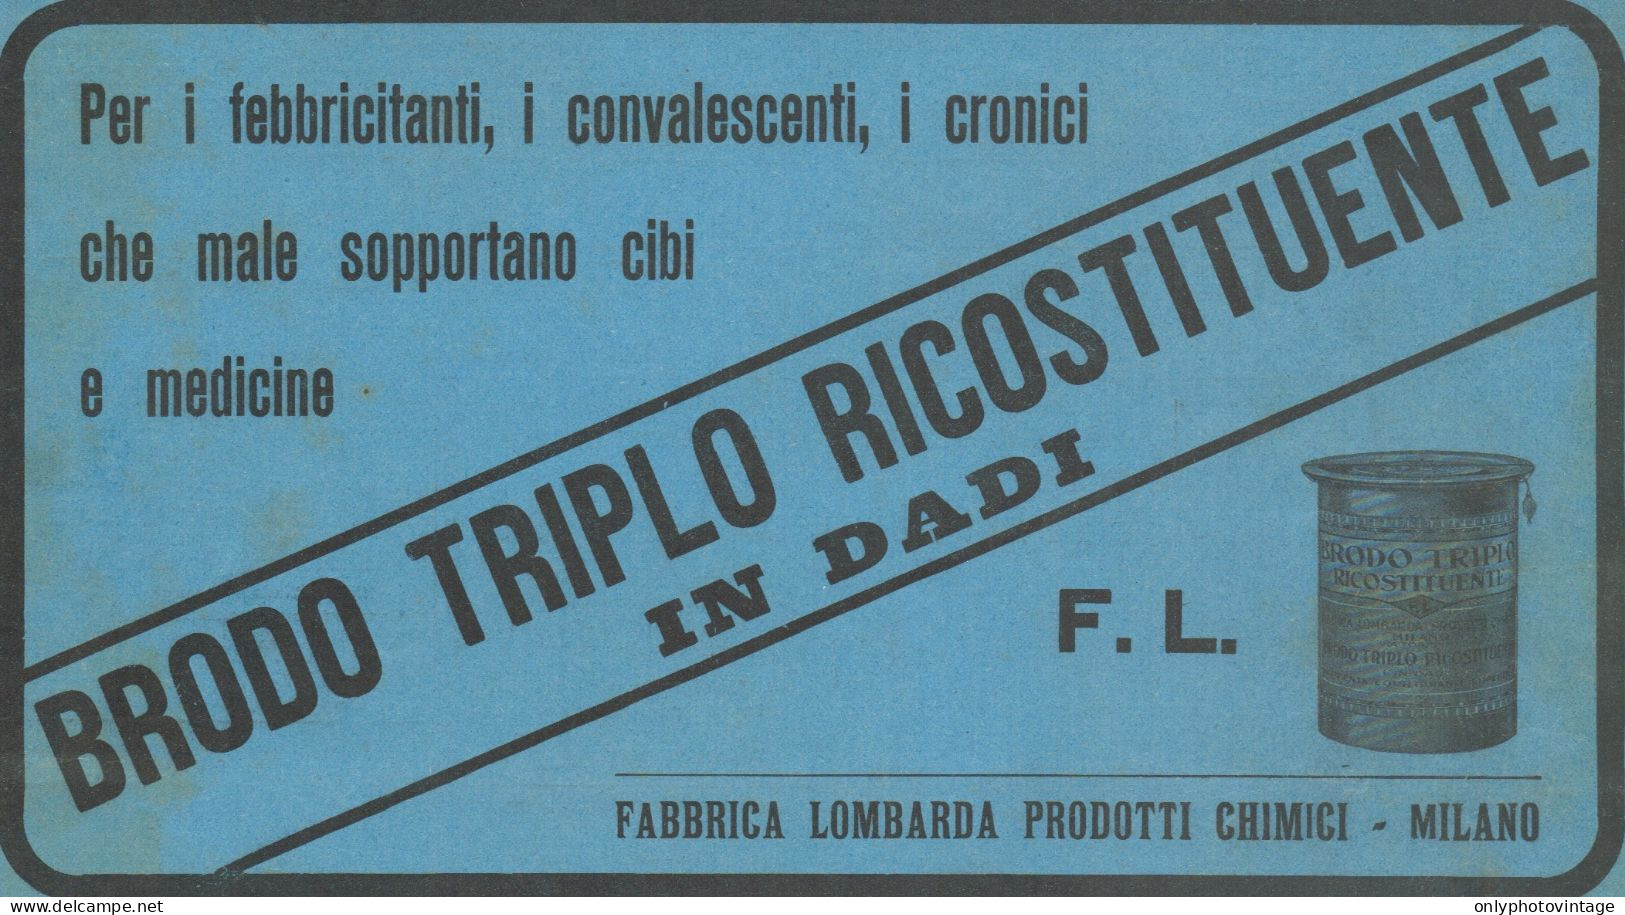 Brodo Triplo Ricostituente In Dadi - Pubblicità D'epoca - 1924 Old Advert - Werbung